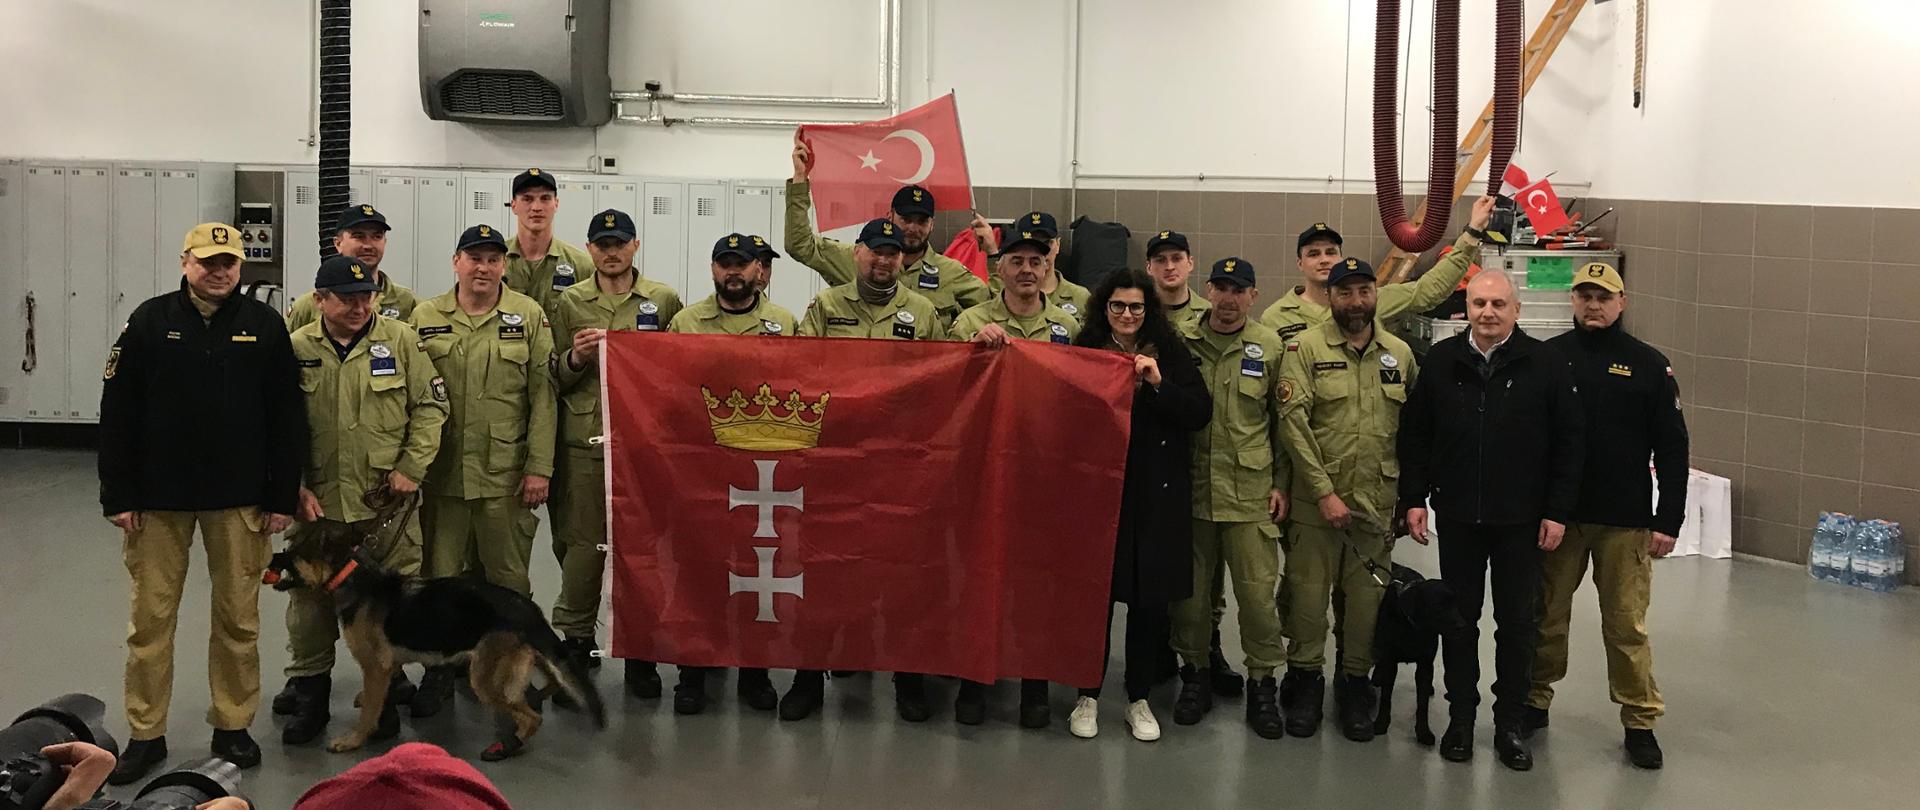 Strażacy z grupy poszukiwawczej trzymają flagę miasta Gdańska stoją wspólnie z wojewodą pomorskim pomorskim komendantem wojewódzkim Państwowej Straży Pożarnej prezydent Gdańska oraz komendantem miejskim Państwowej Straży Pożarnej w Gdańsku.